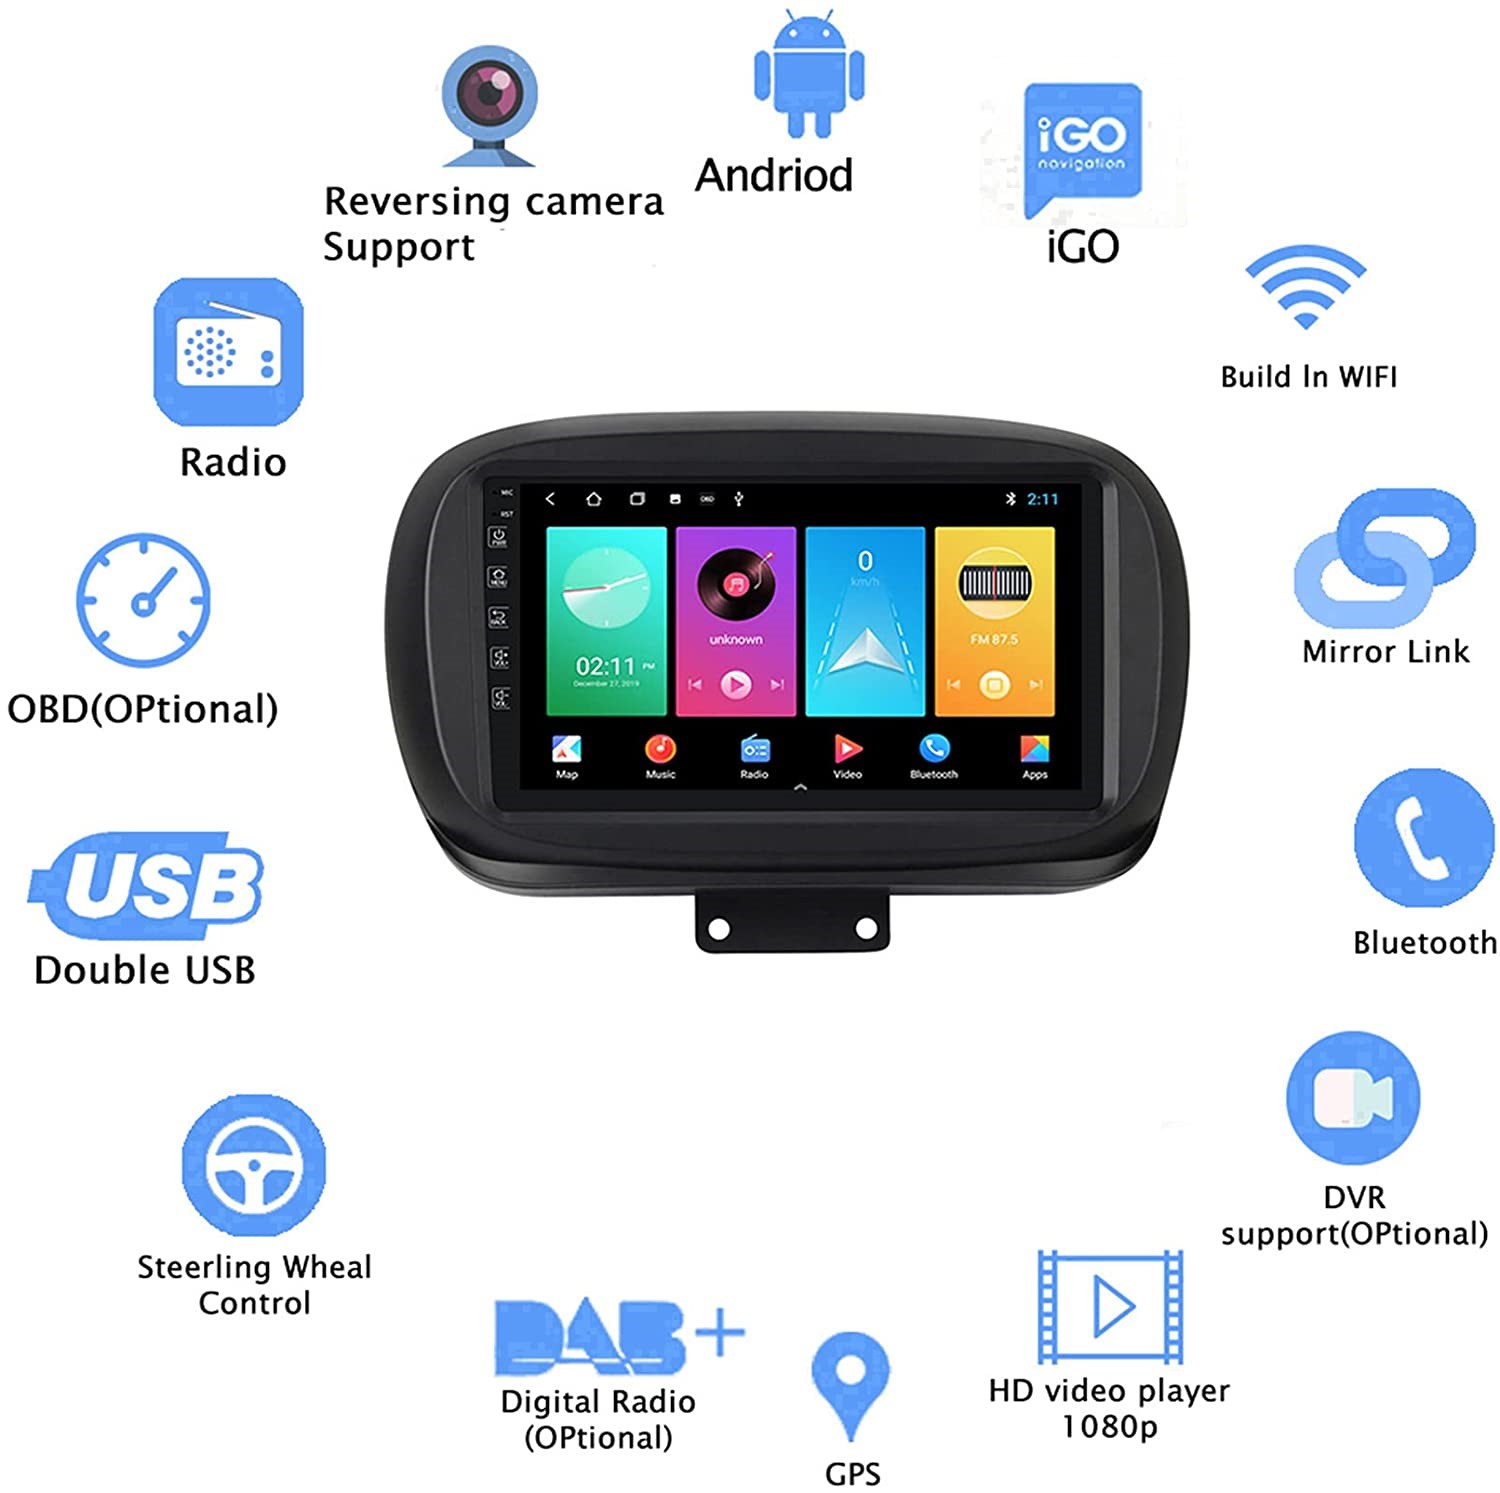 9 zoll  Android 10 Autoradio GPS Navi für FIAT 500X 2014-2019 USB  WIFI FM USB 